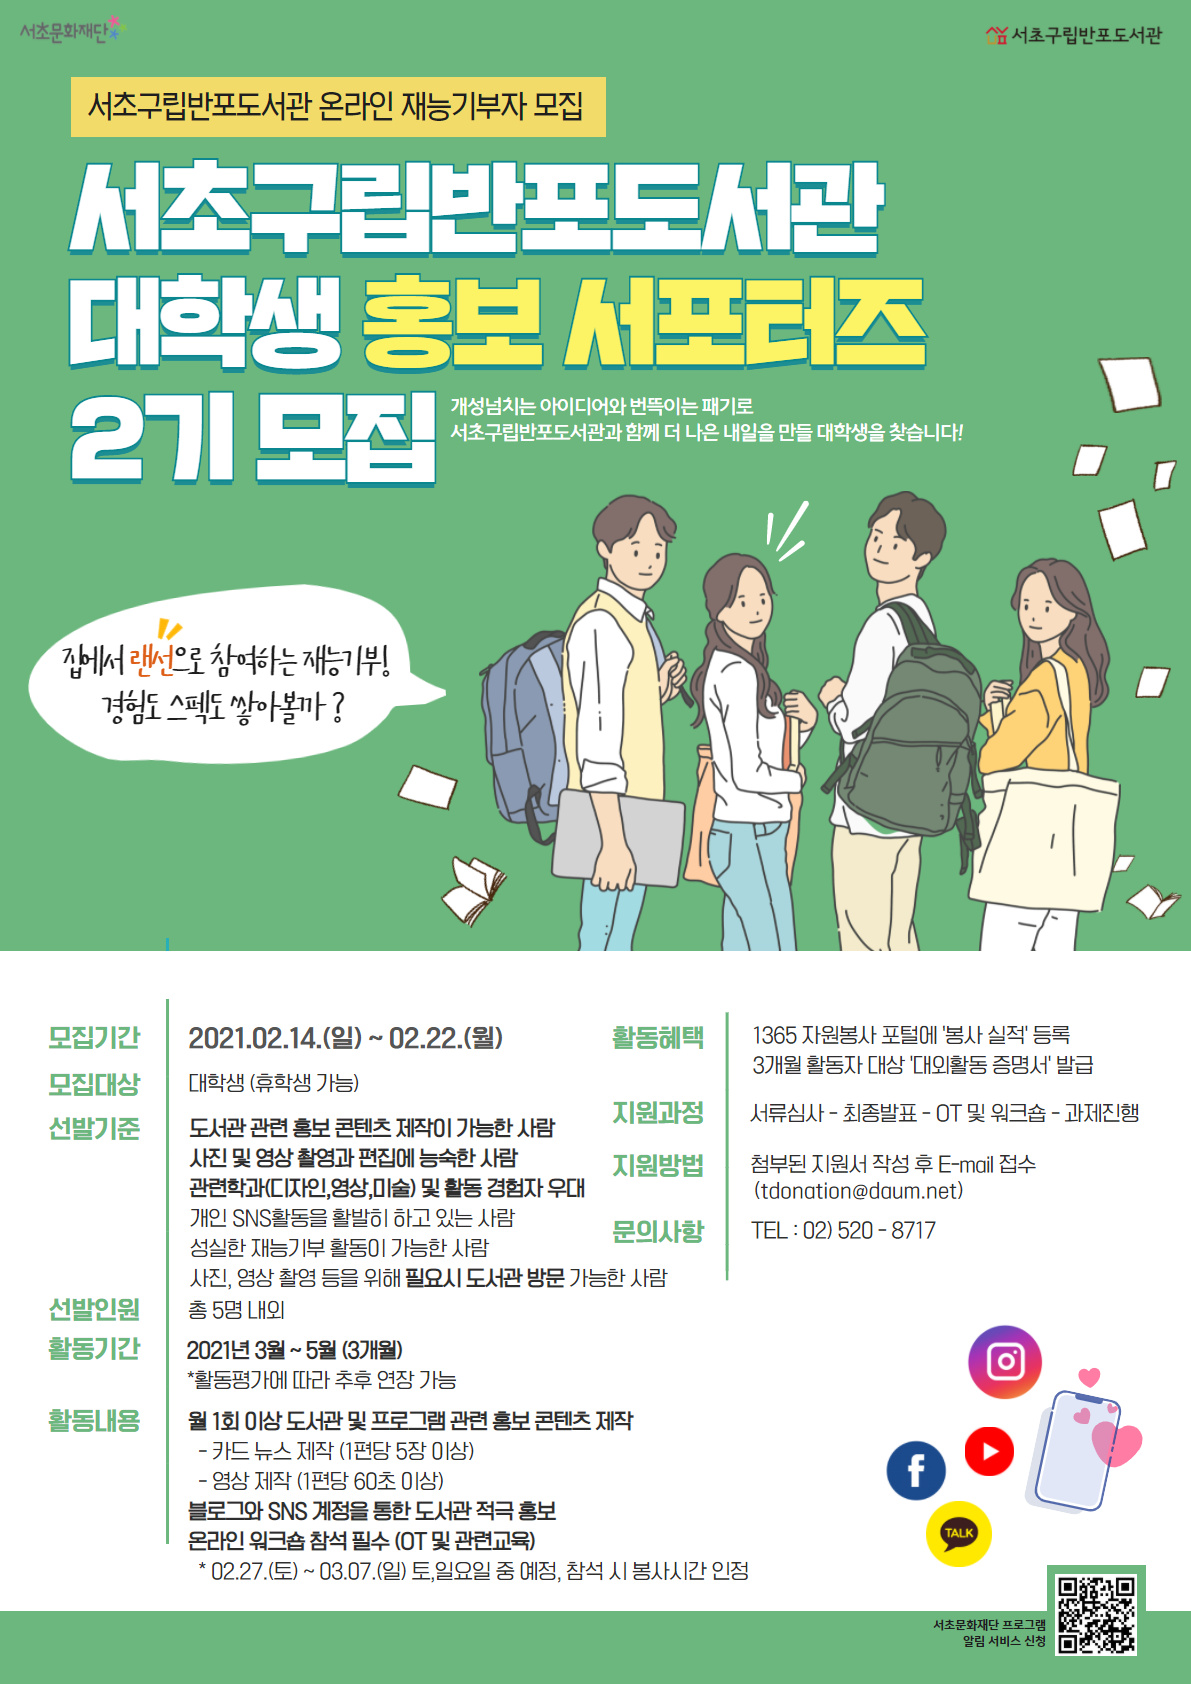 서초구립반포도서관 대학생 홍보 서포터즈-2기 모집 (재능기부자 모집)